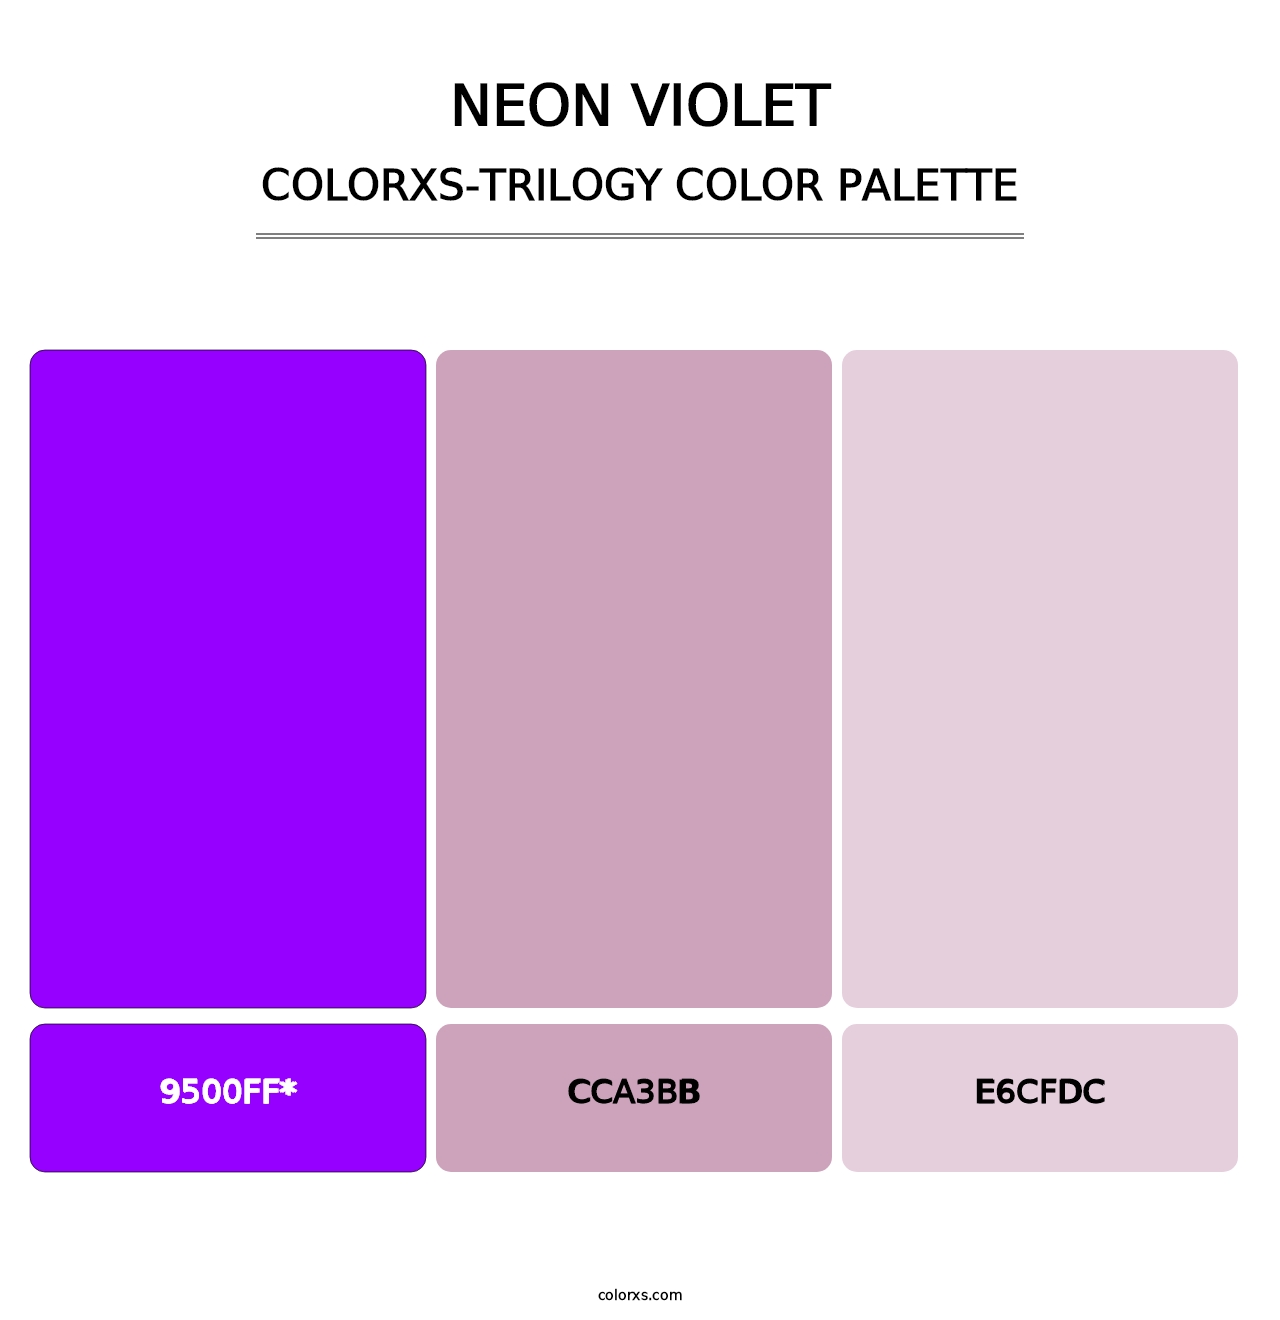 Neon Violet - Colorxs Trilogy Palette